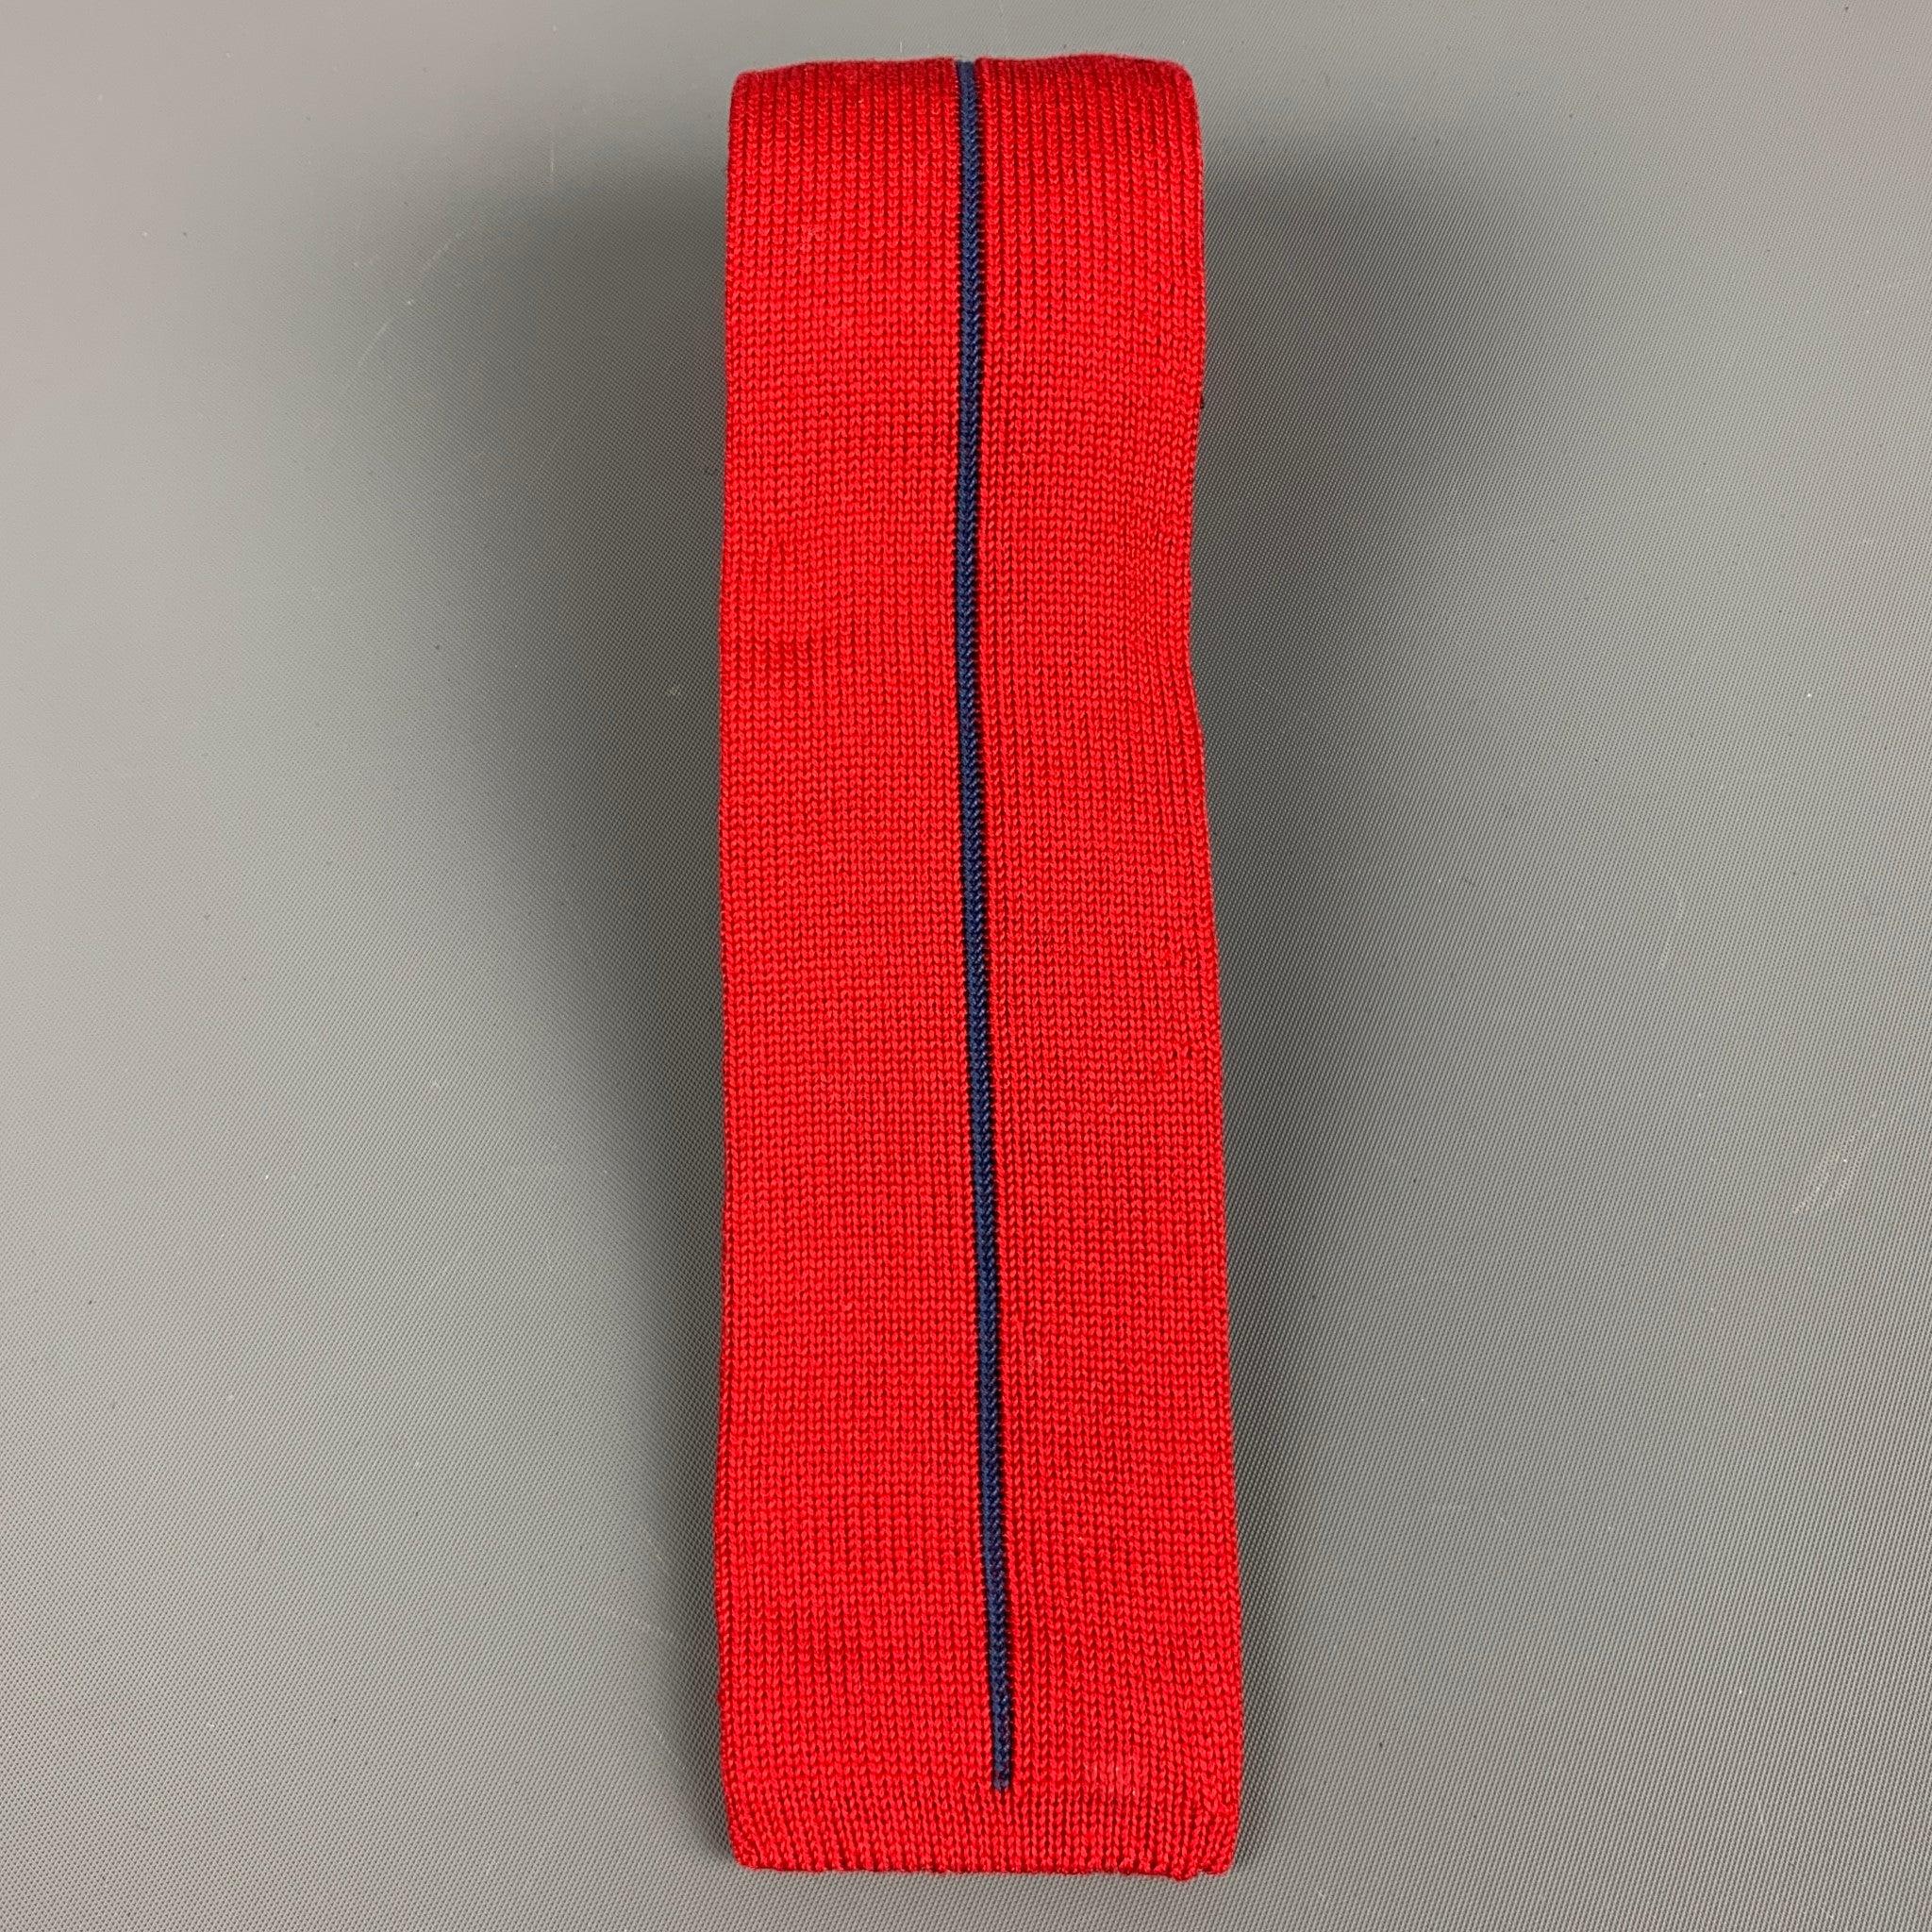 CLAUDE MONTANA
Krawatte aus rotem Baumwollstrick mit schmalen vertikalen blauen Streifen. Made in Italy Ausgezeichneter Pre-Owned Zustand. 

Abmessungen: 
  Breite: 2 Zoll Länge: 49 Zoll 
  
  
 
Referenz: 127989
Kategorie: Krawatte
Mehr Details
   